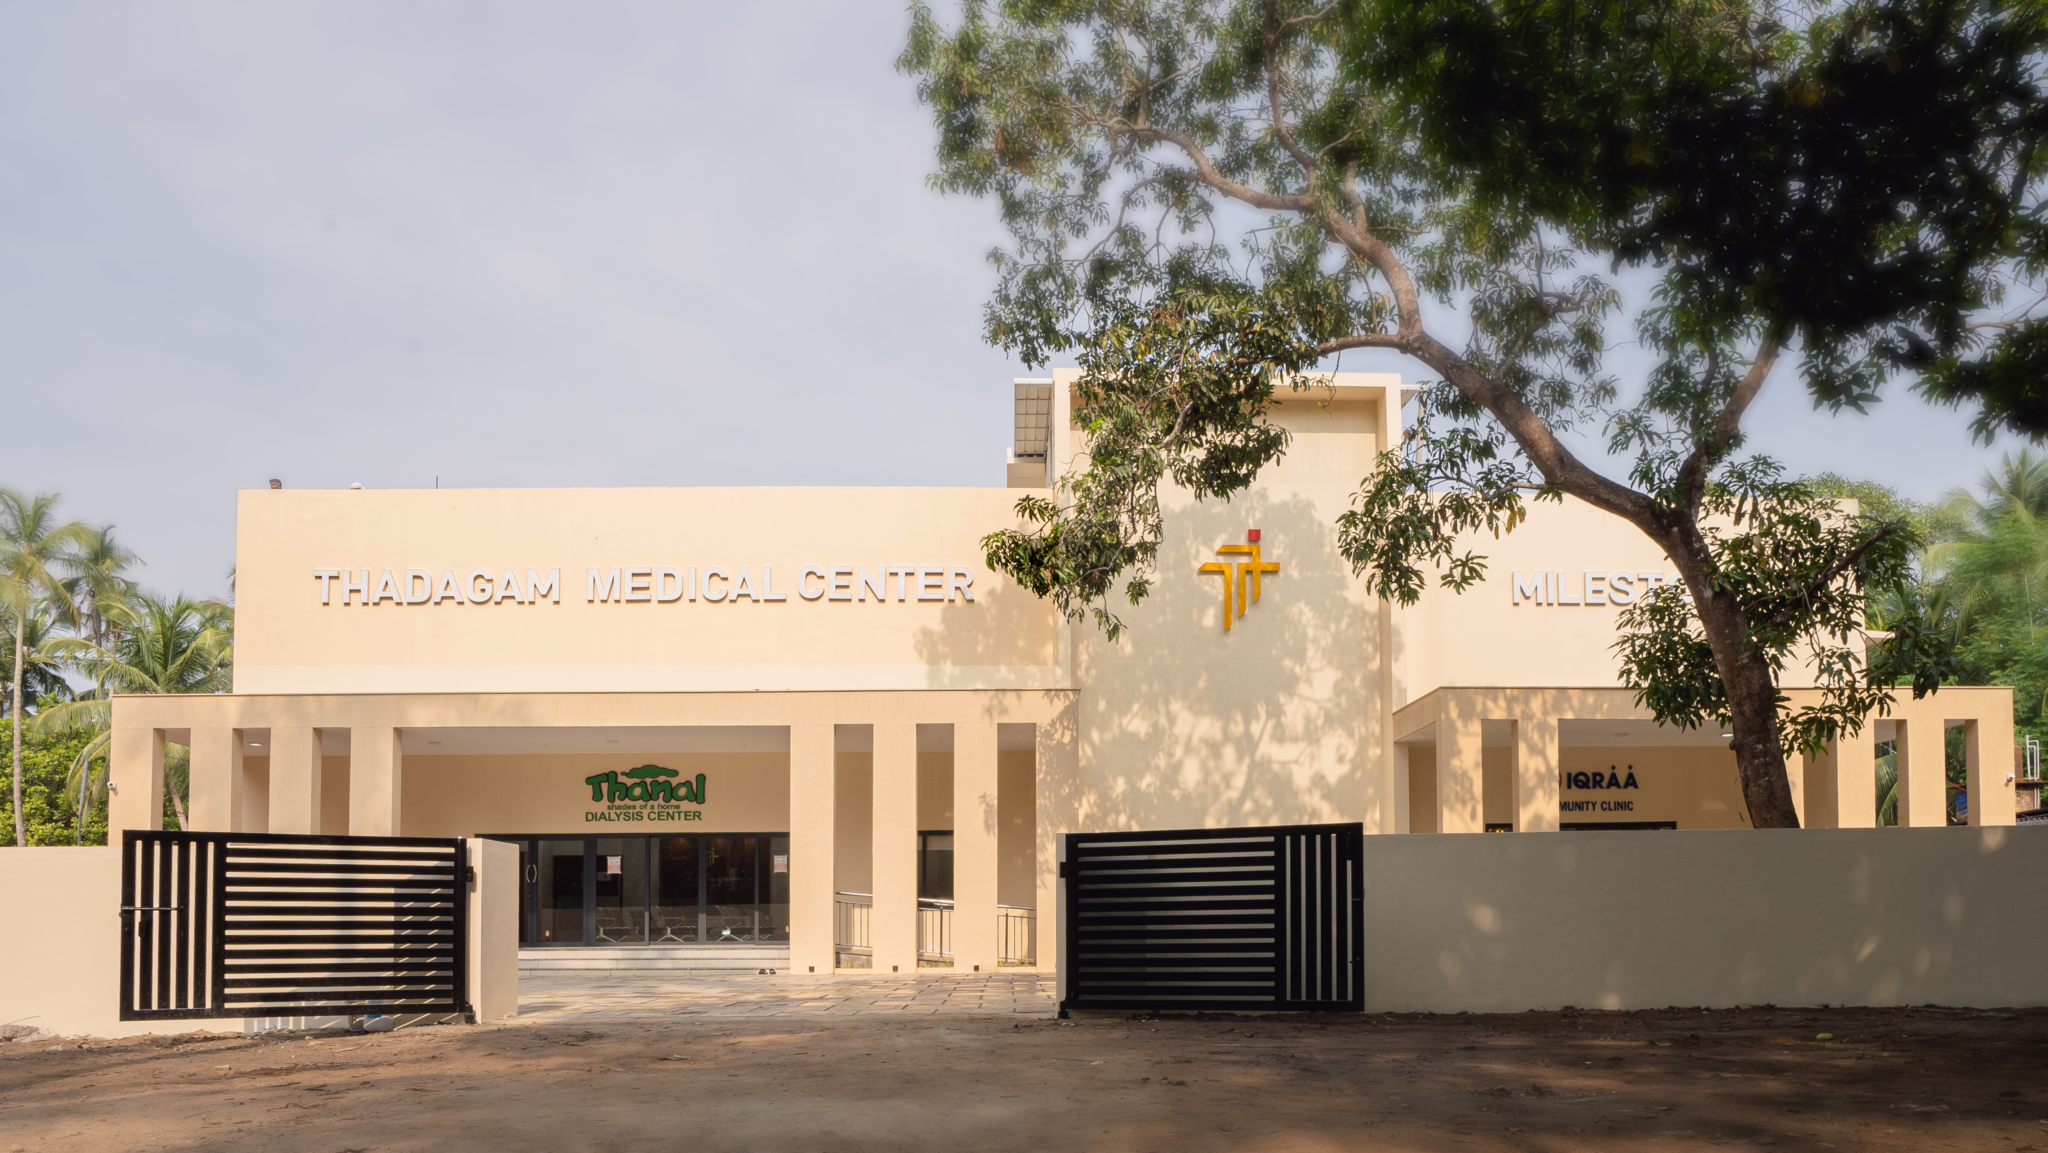 Thadagam Medical Center